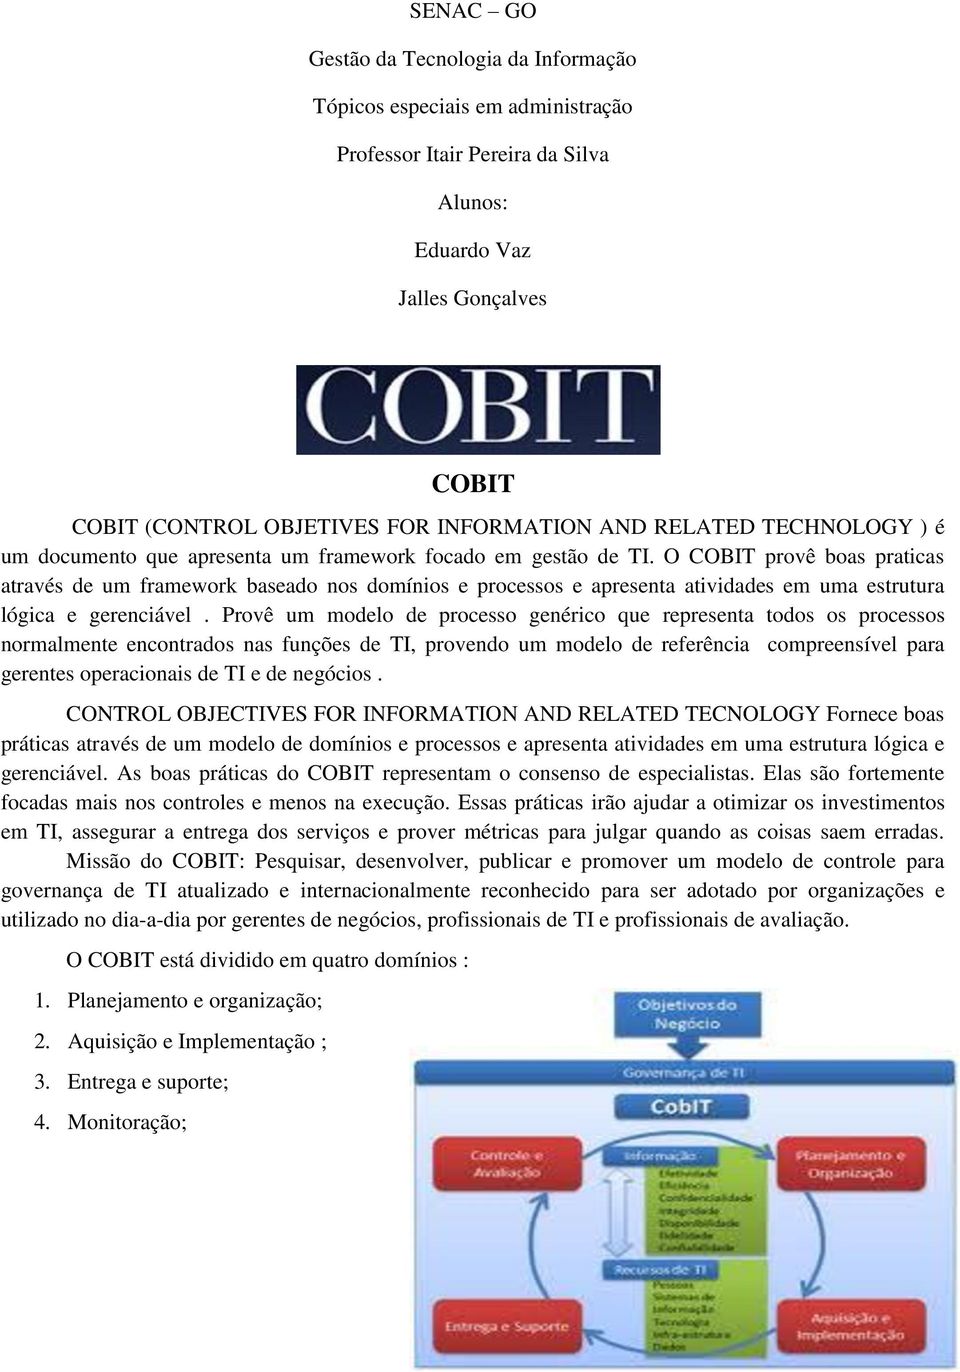 O COBIT provê boas praticas através de um framework baseado nos domínios e processos e apresenta atividades em uma estrutura lógica e gerenciável.